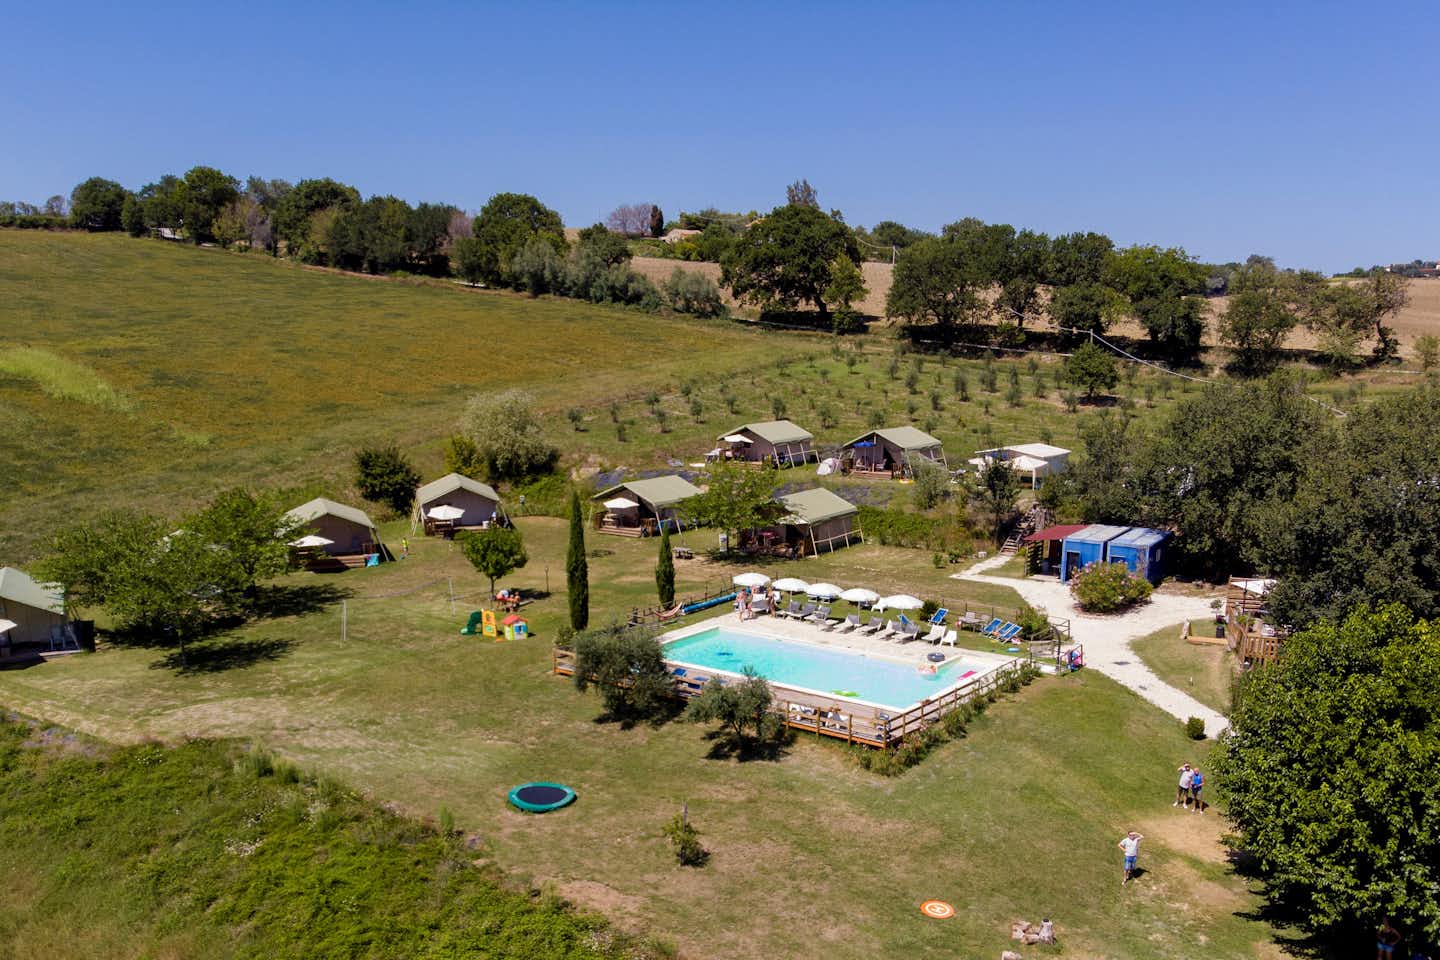 Vodatent @ Tenuta Tredici Ulivi - Luftaufnahme des Campingplatzes mit Pool